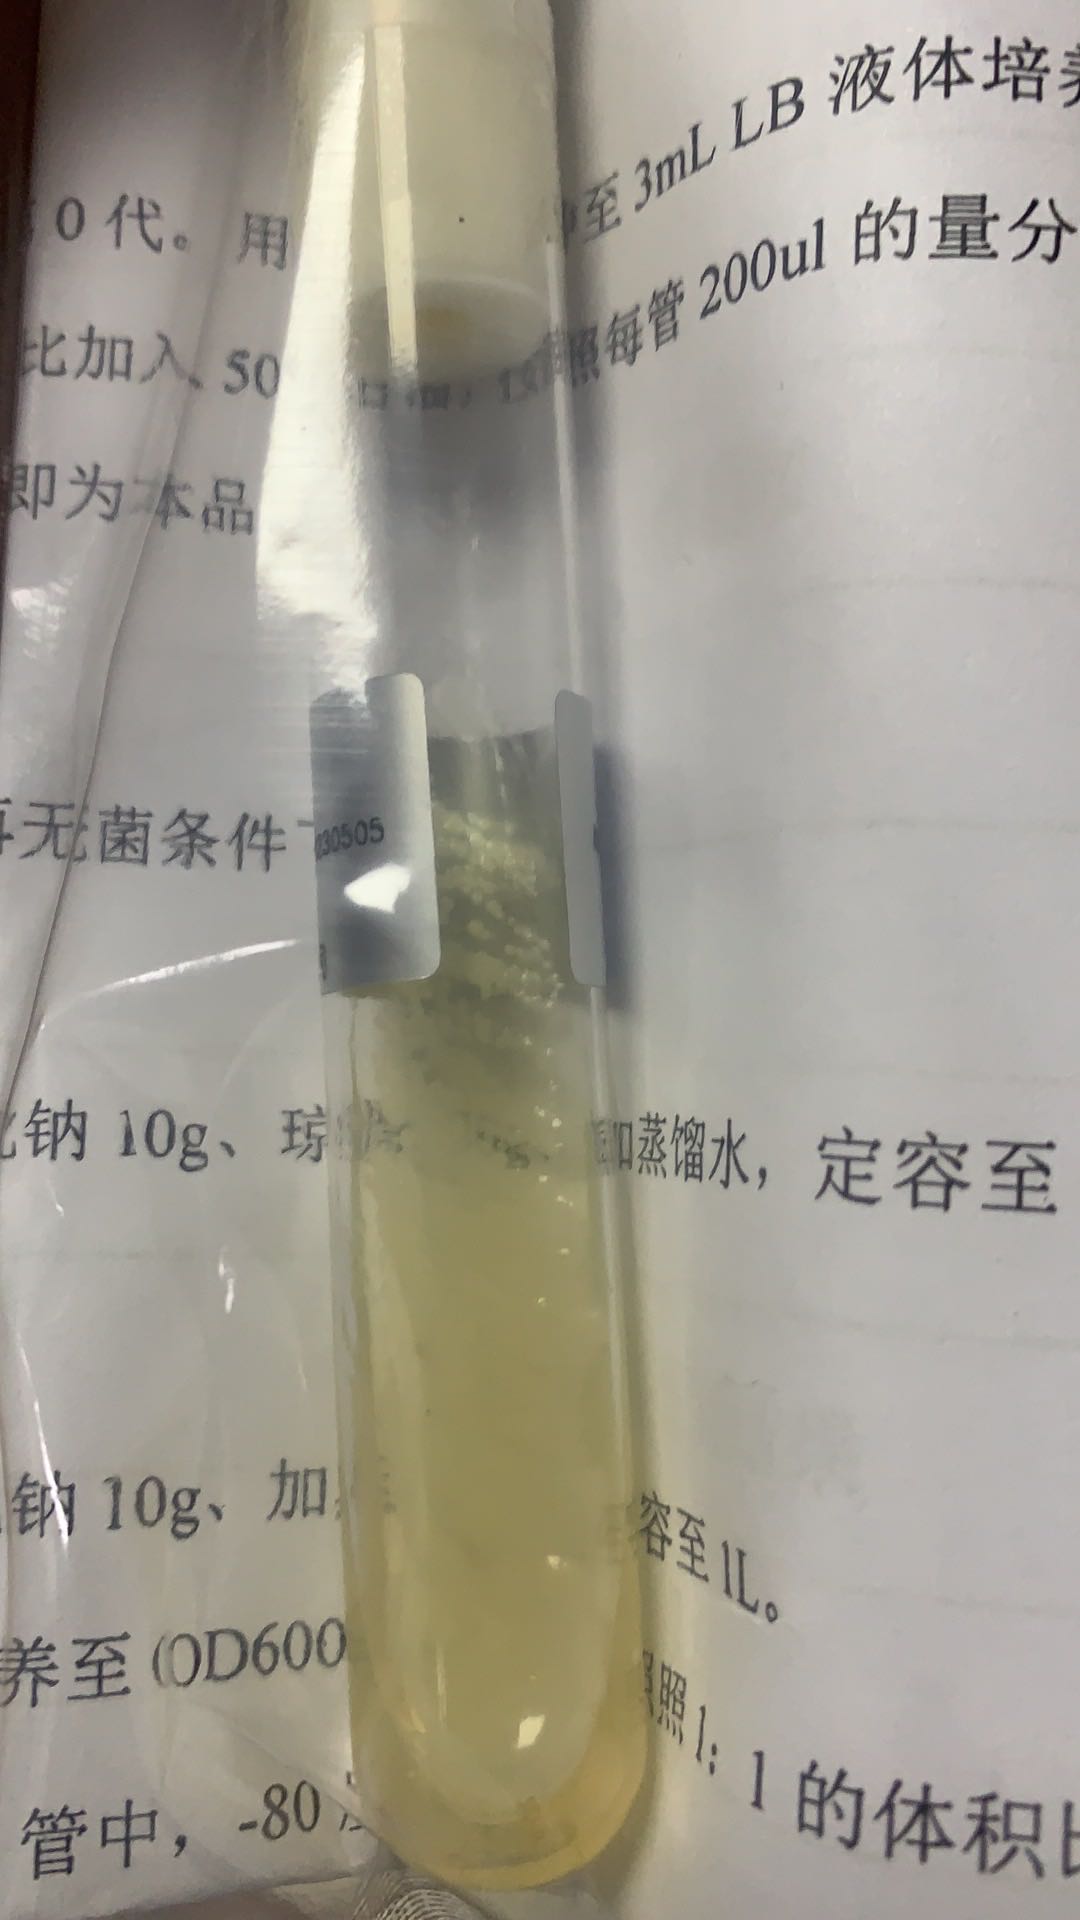 菌液金黄色葡萄球菌ATCC_提供金黄色葡萄球菌_上海晅科生物科技有限公司